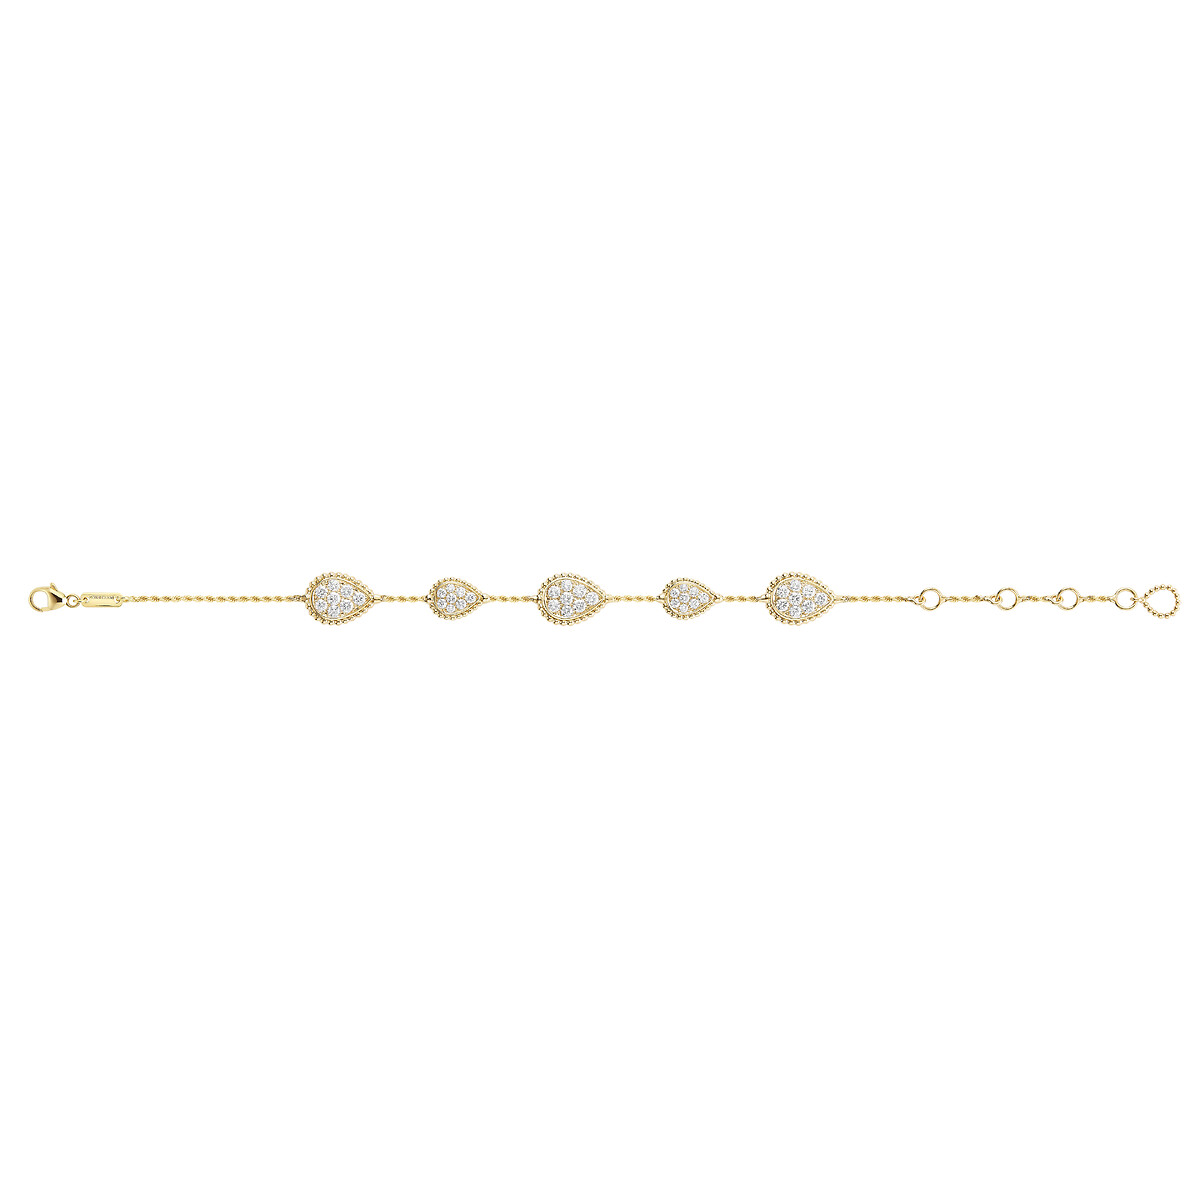 Second product packshot​ Serpent Bohème Bracelet, 5 motifs